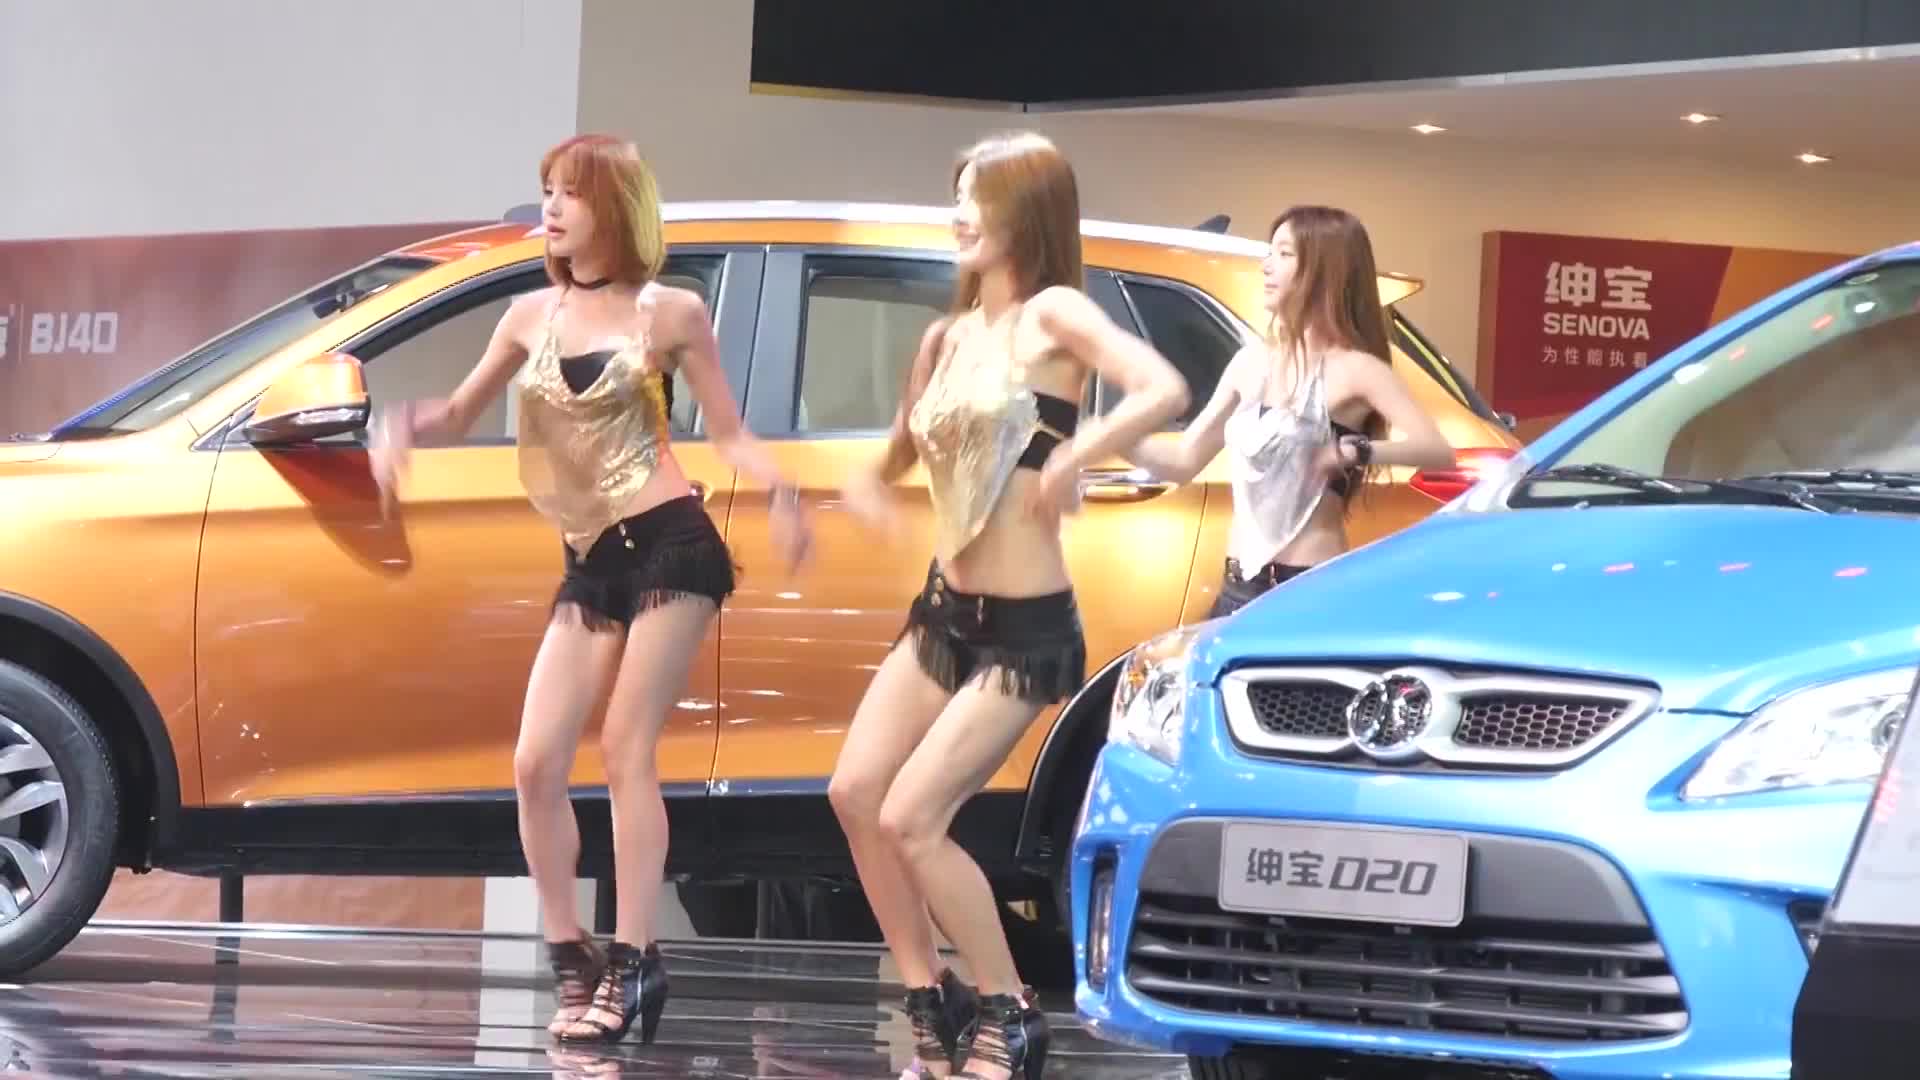 廣州車展 2014 – 北京汽車 – 韓國女子組合、舞二